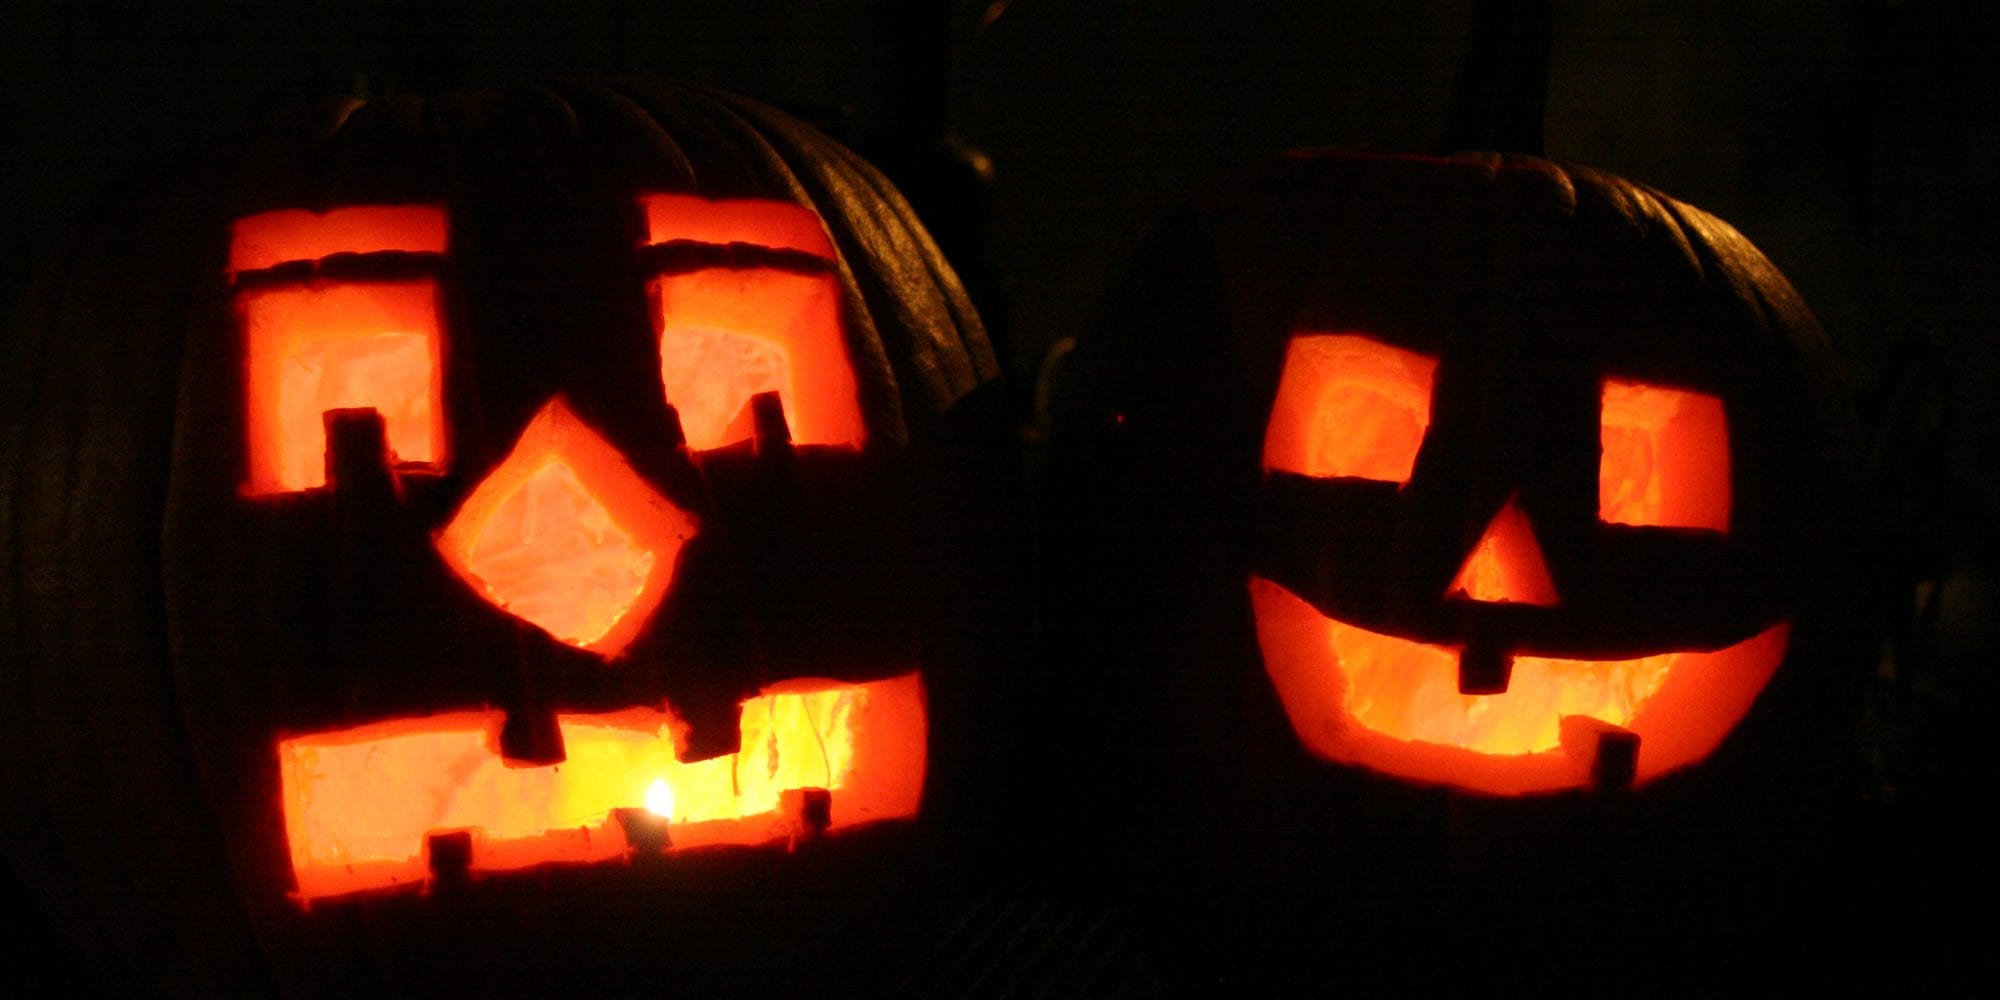 جک و فانوس هالووین. عکس تام لمپ.